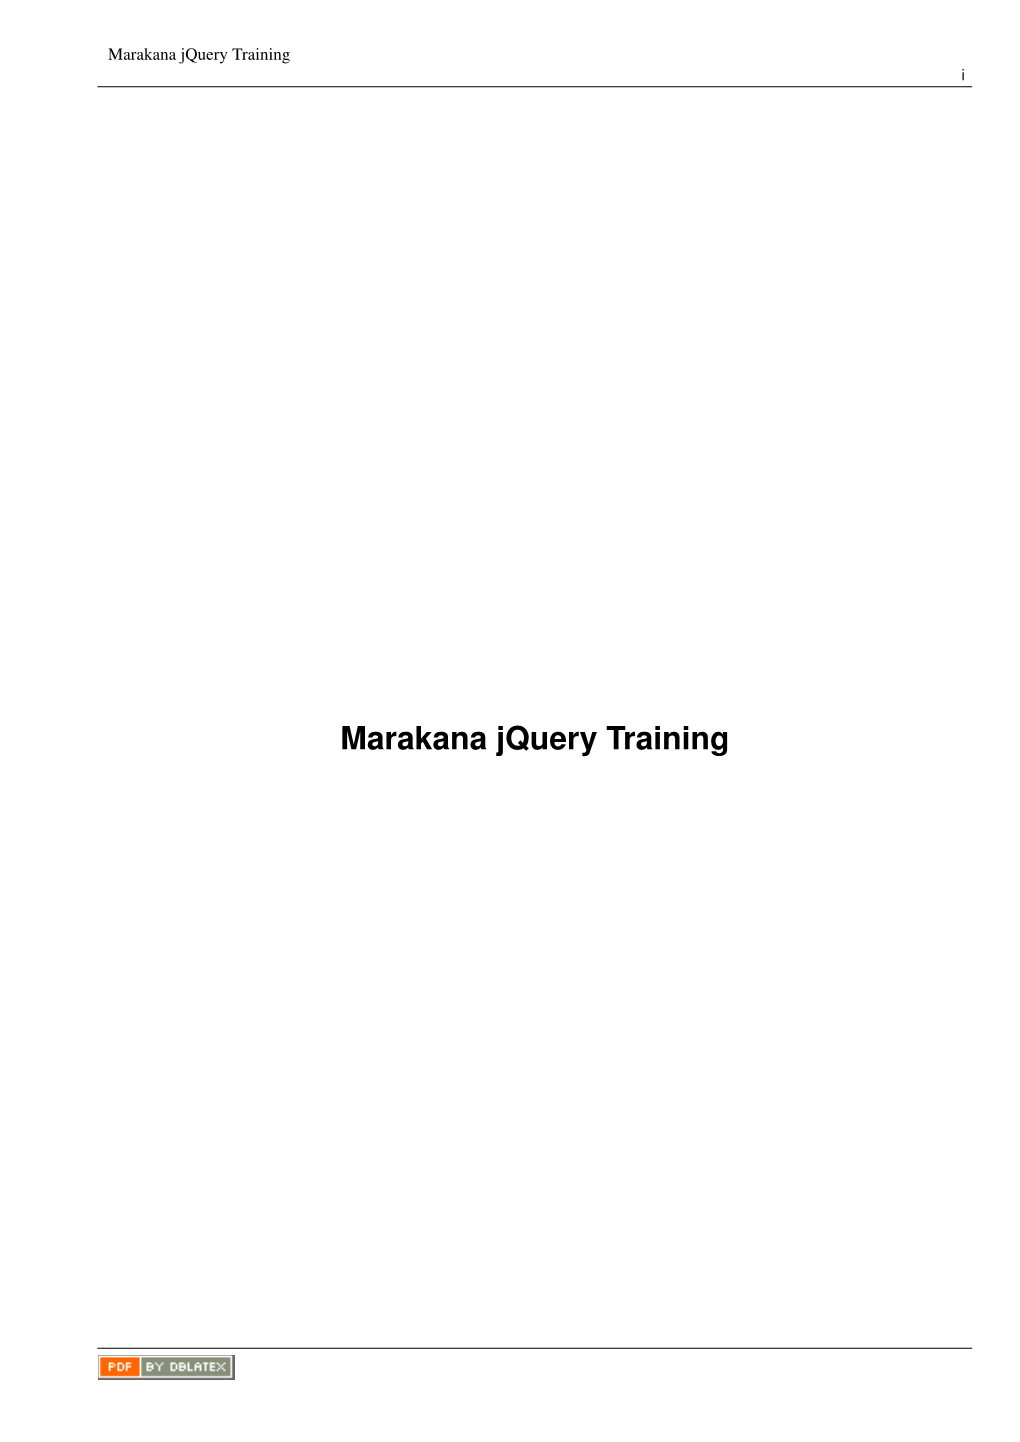 Marakana Jquery Training I